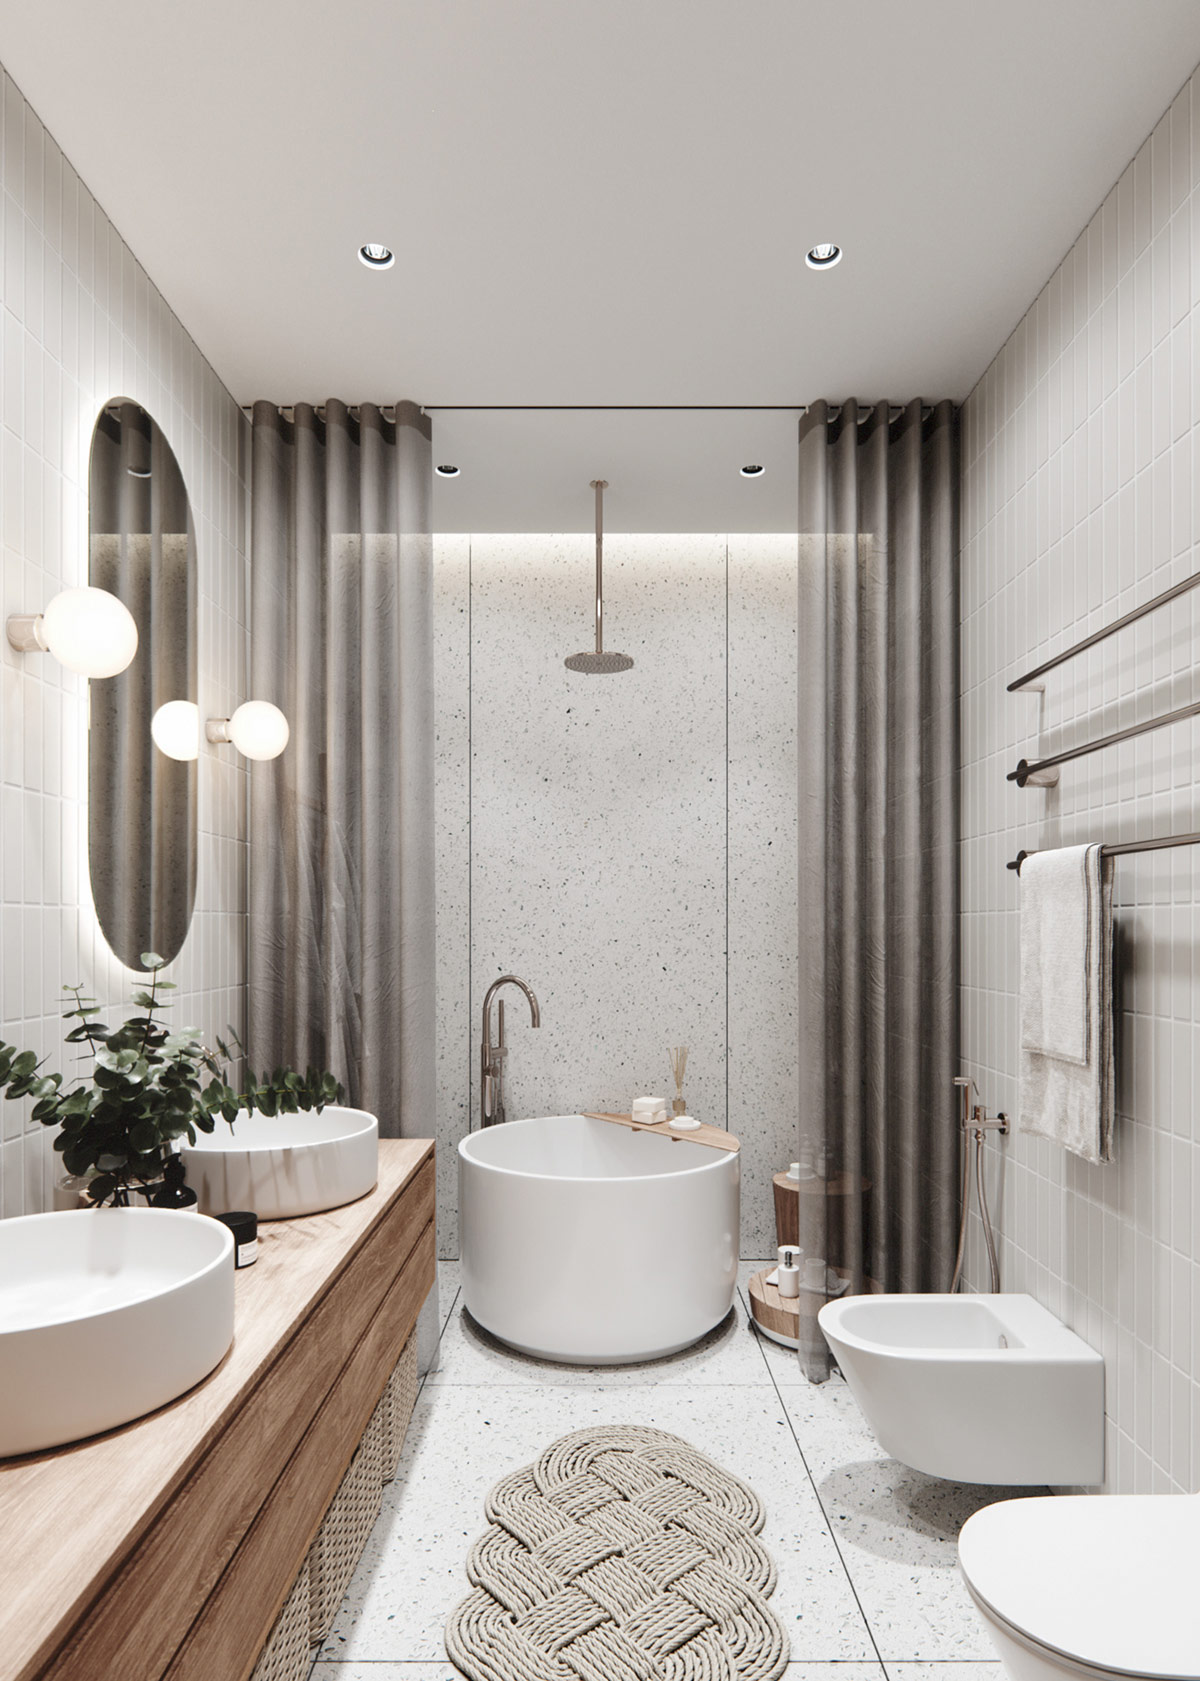 Phòng tắm gây ấn tượng bởi chiếc bồn tắm ngâm kiểu Nhật, lối vào trải tấm thảm dệt cùng những chiếc giỏ mây xếp dưới bồn rửa cho cảm giác gần gũi với tự nhiên.